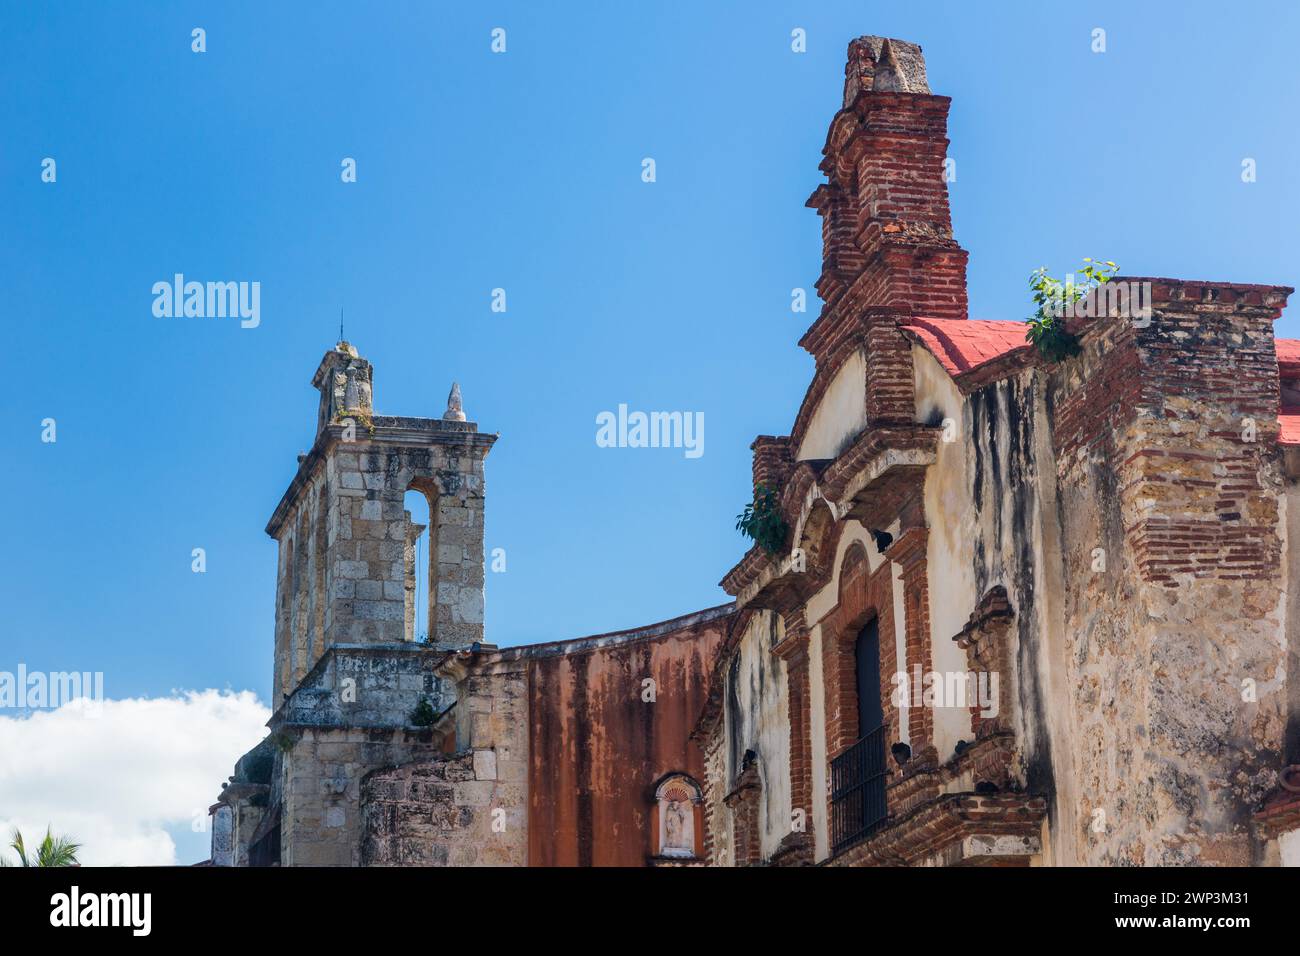 Cappella Dominicana del terzo ordine nella vecchia città coloniale di Santo Domingo, Repubblica Dominicana. Fu costruito negli anni '1700 come parte dell'Impe Foto Stock